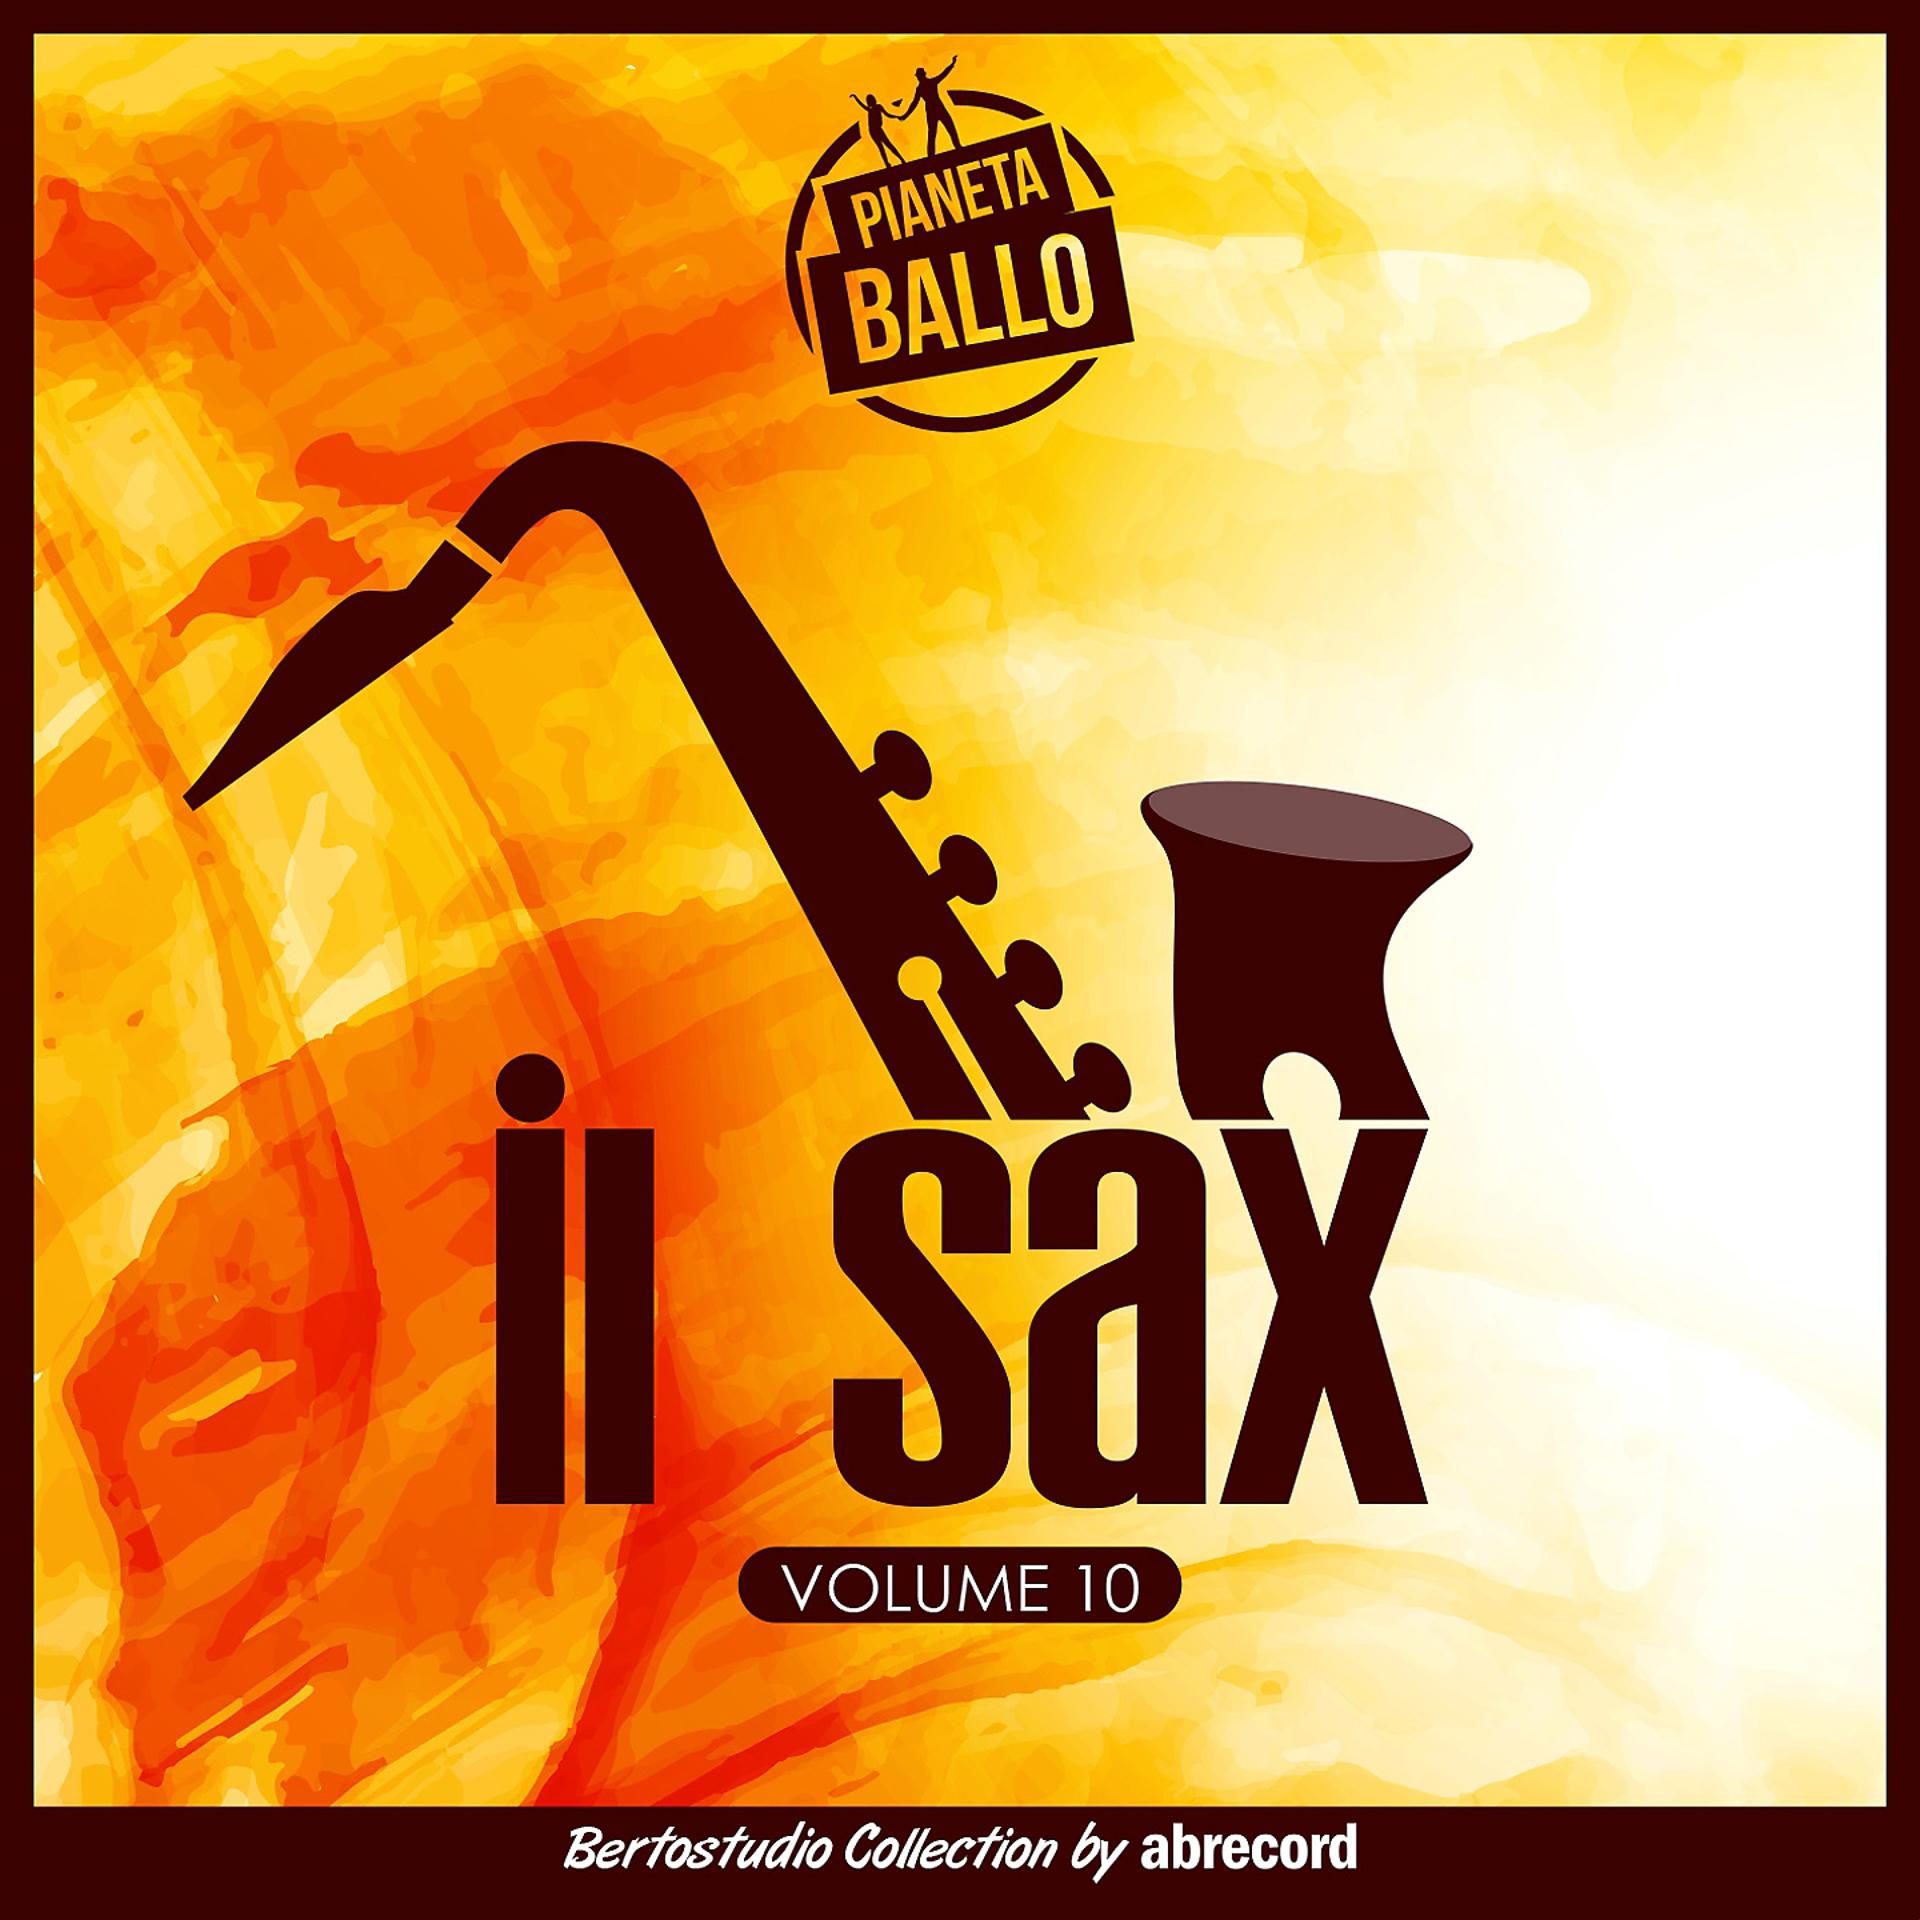 Постер альбома Pianeta Ballo Vol.10 "Il sax"